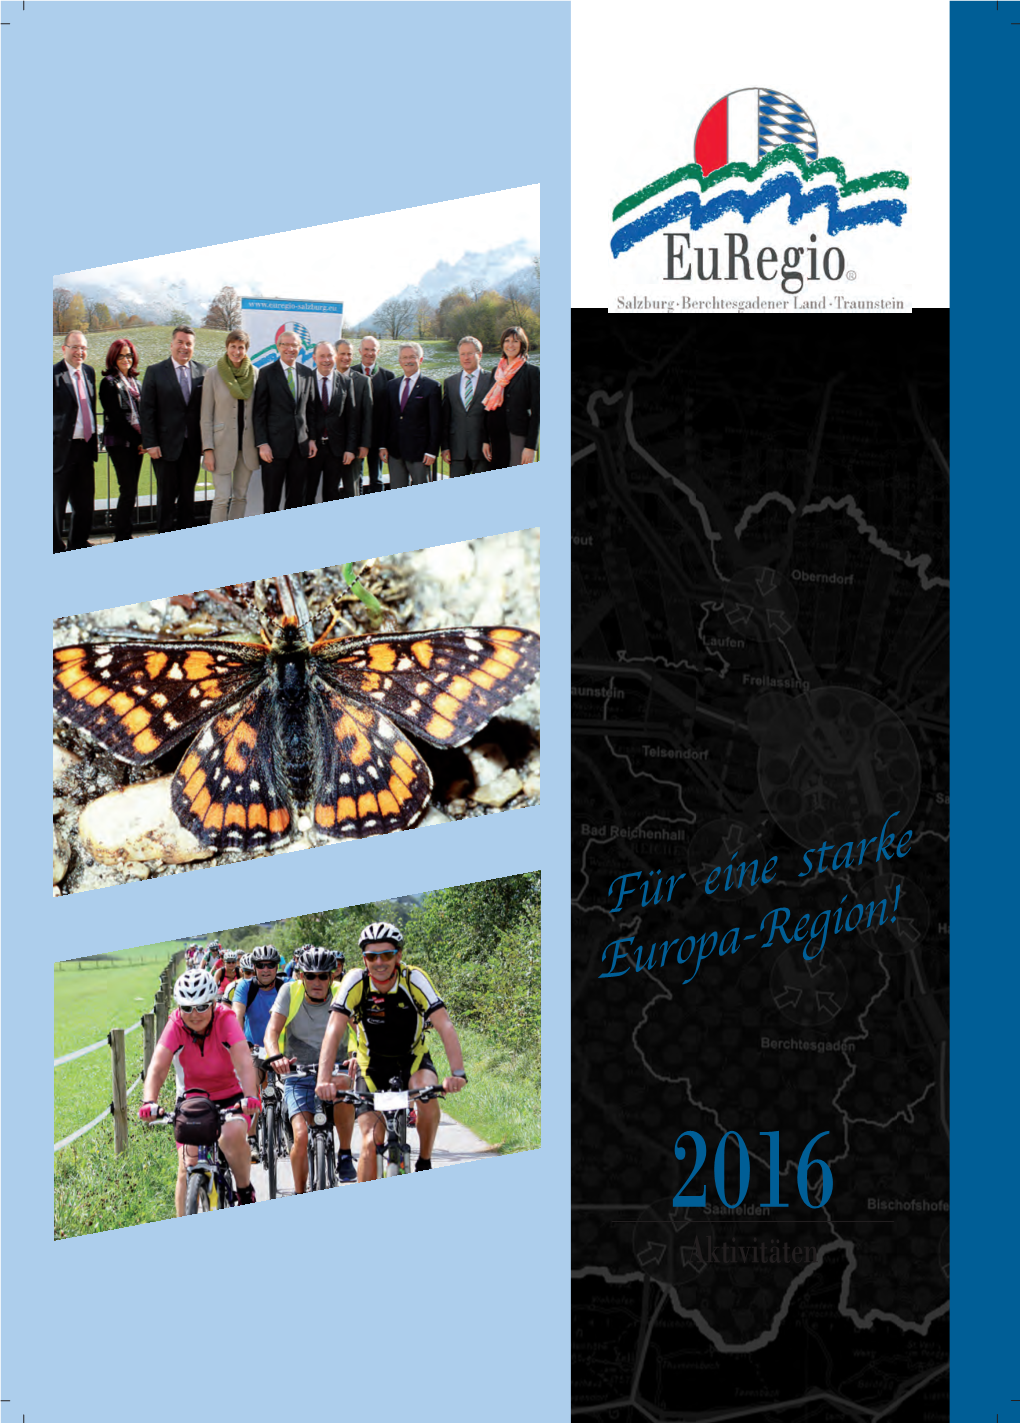 Für Eine Starke Europa-Region! 2016 Aktivitäten Die Euregio in Geografischer Übersicht